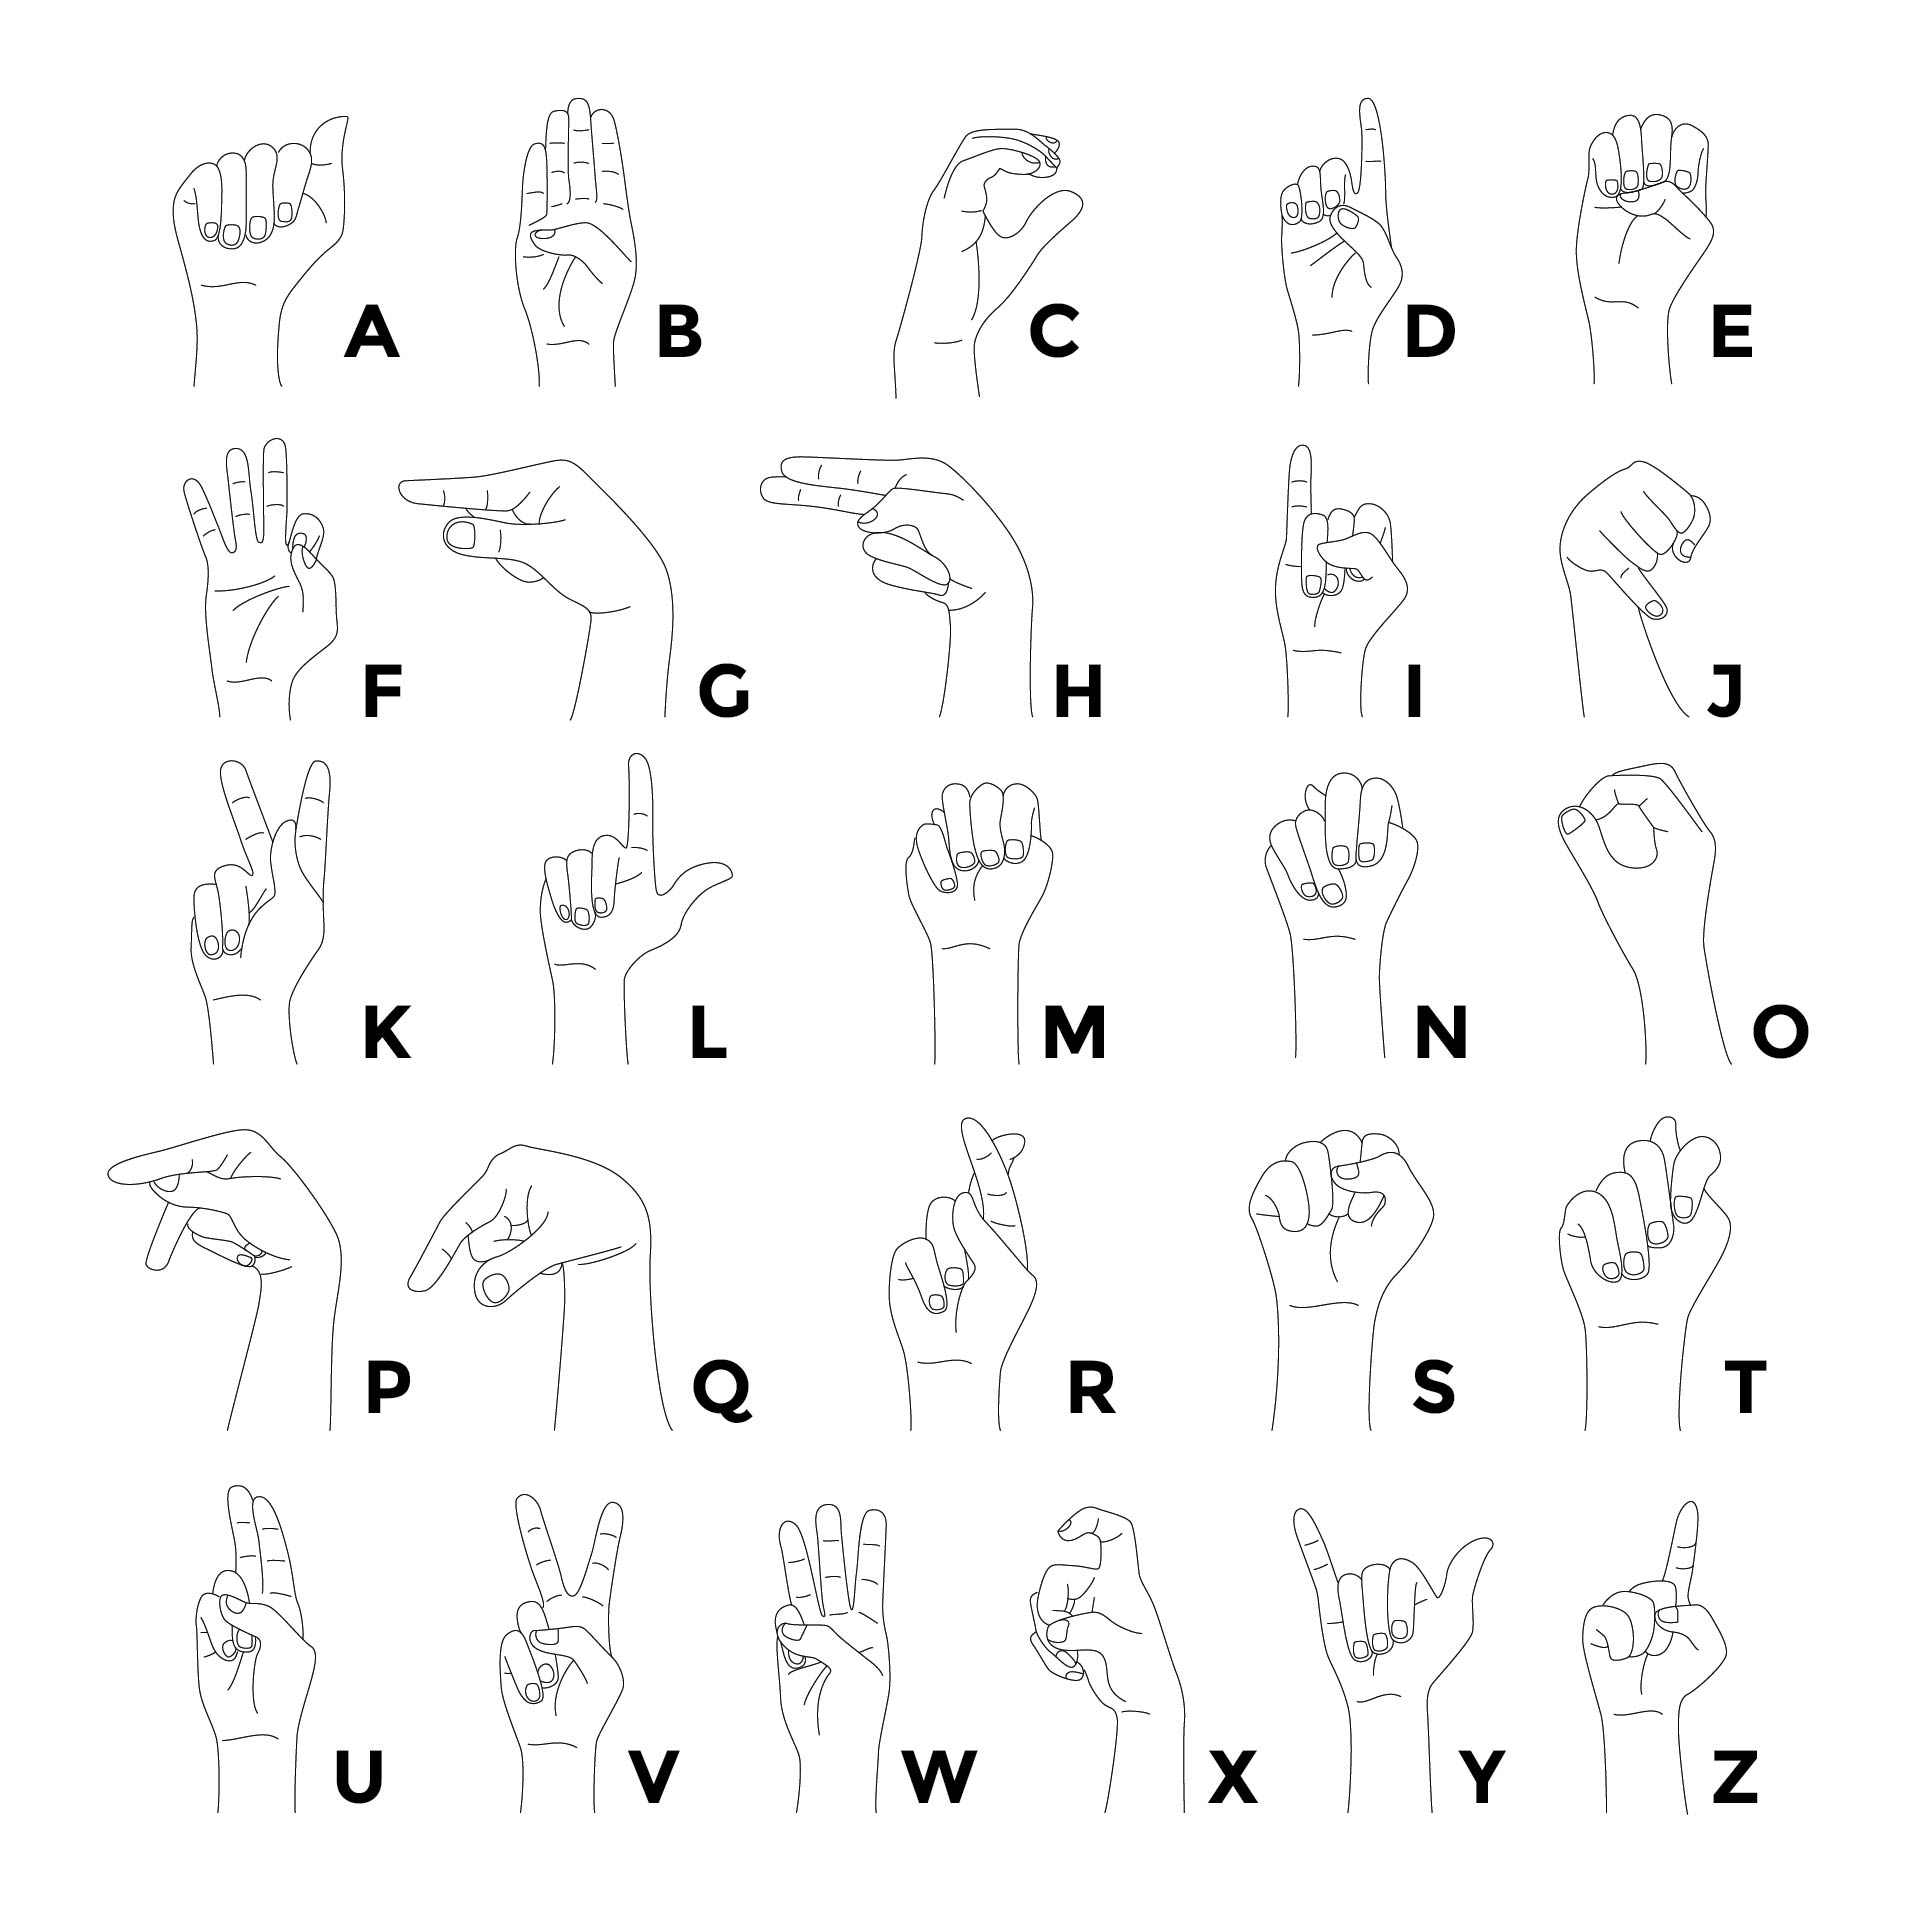 basic-sign-language-chart